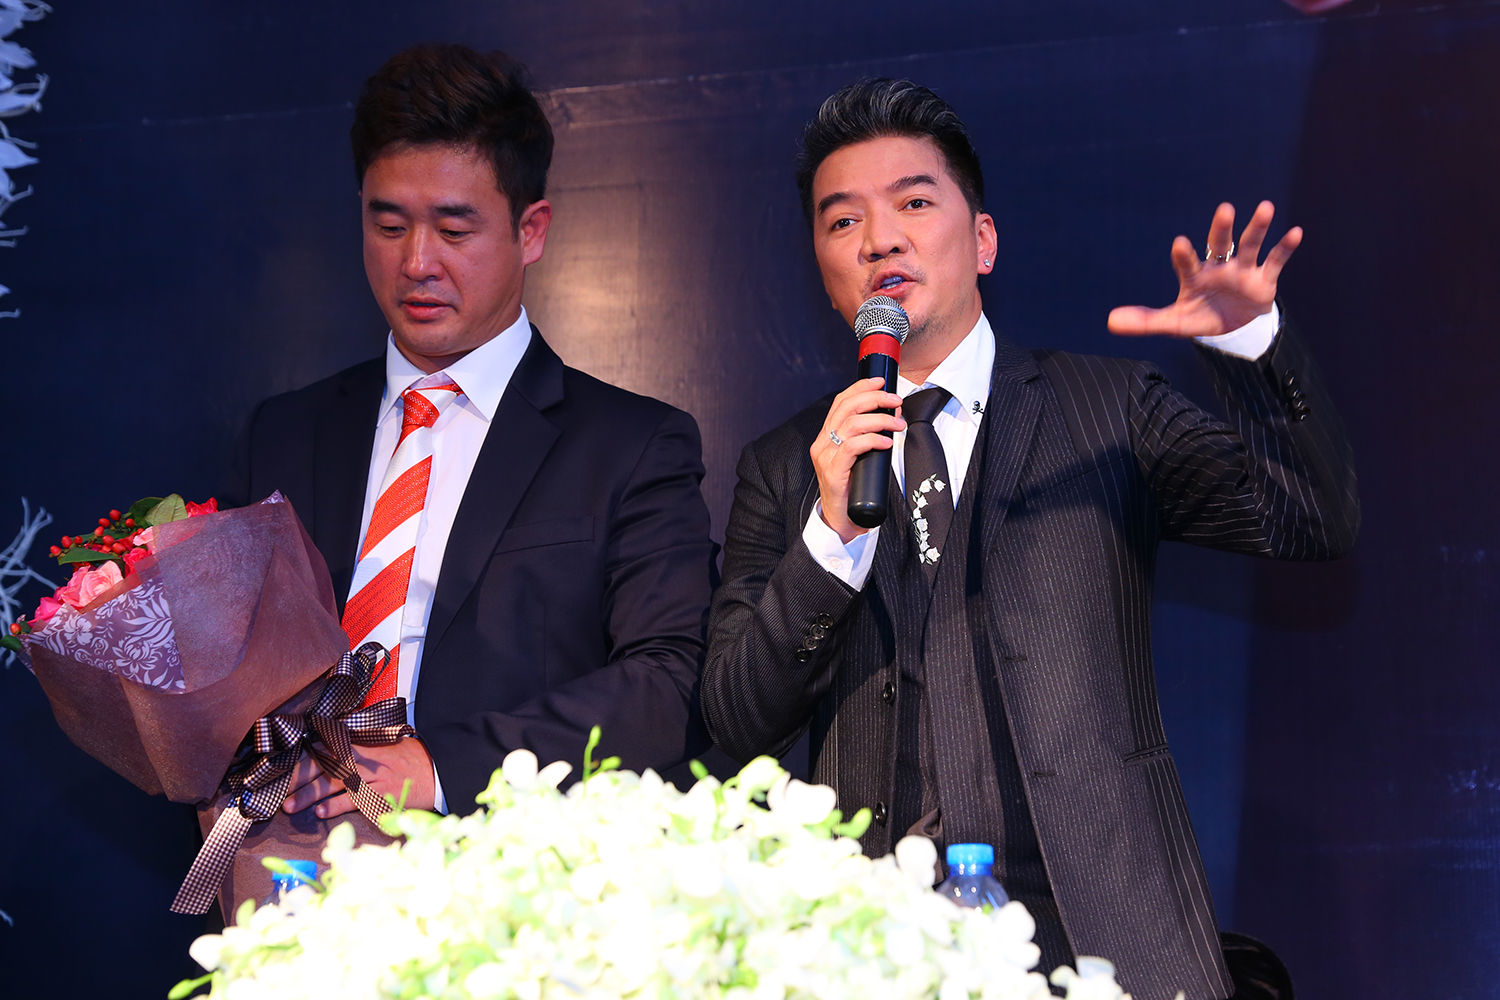 Ca sĩ Đàm Vĩnh Hưng đón nhận danh hiệu Nghệ sĩ châu Á xuất sắc từ đại diện BTC giải thưởng Ngôi sao châu Á